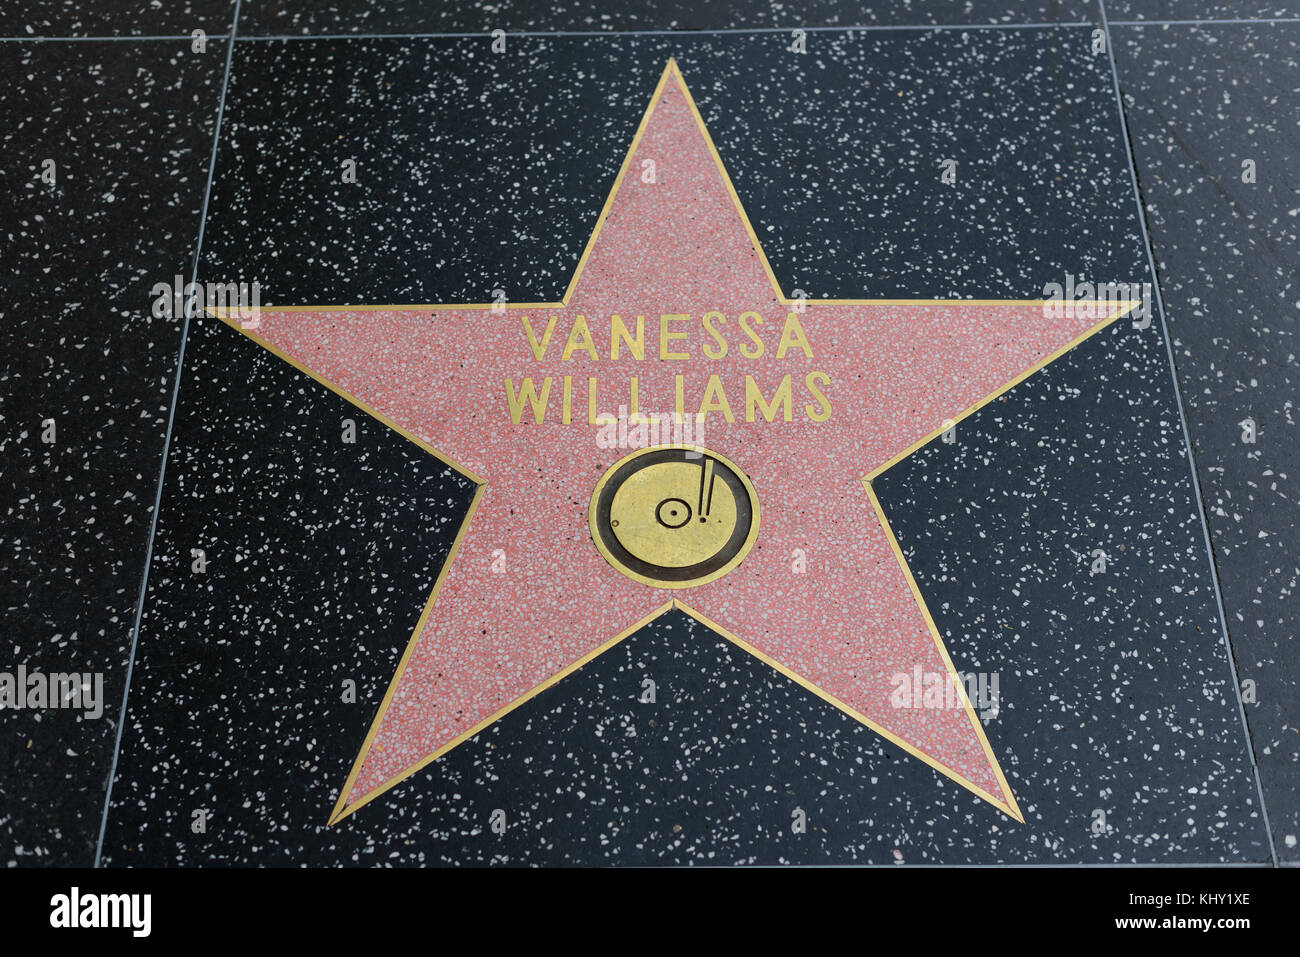 HOLLYWOOD, CA - DICEMBRE 06: Vaness Williams stella sulla Hollywood Walk of Fame a Hollywood, California il 6 dicembre 2016. Foto Stock